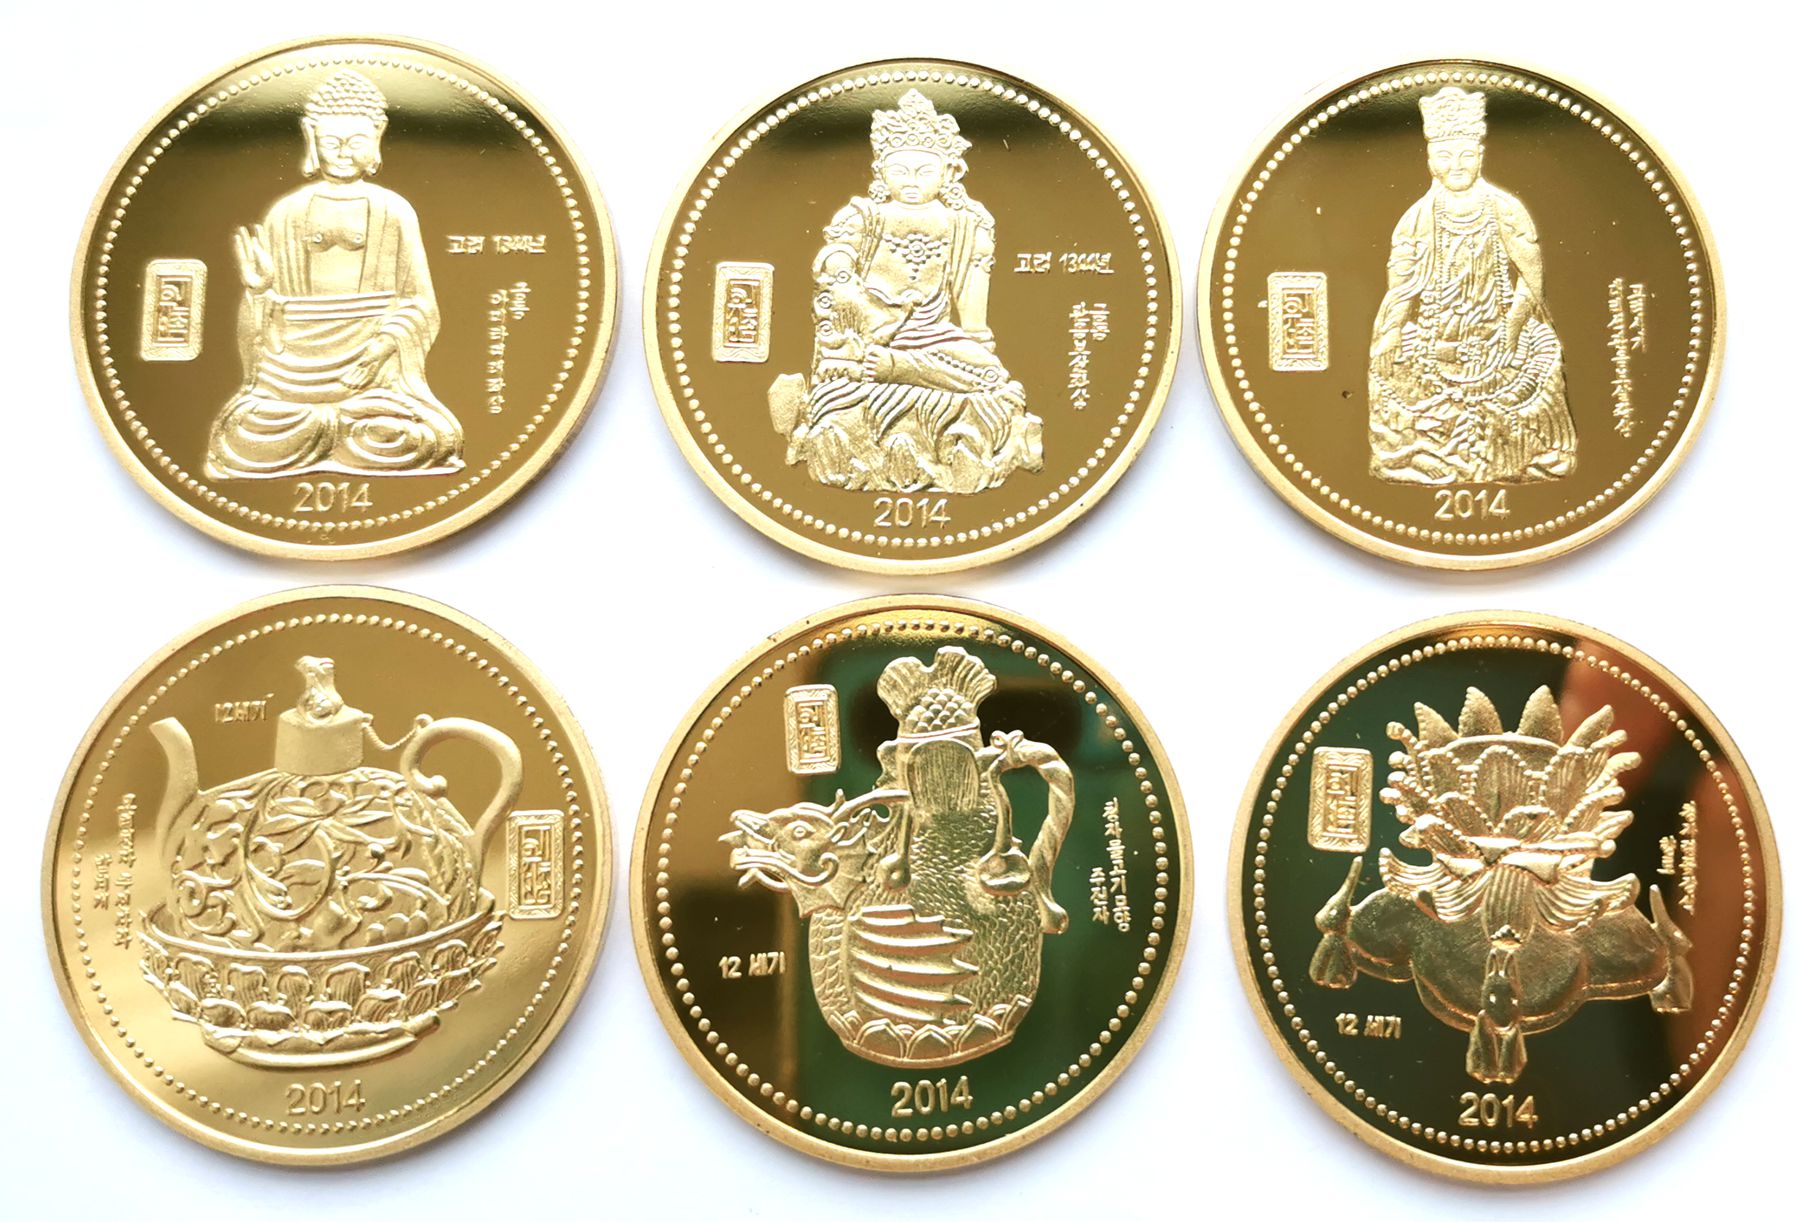 L3154, Korea Buddhism and Porcelain 6 Pcs Commemorative Coins, 2014